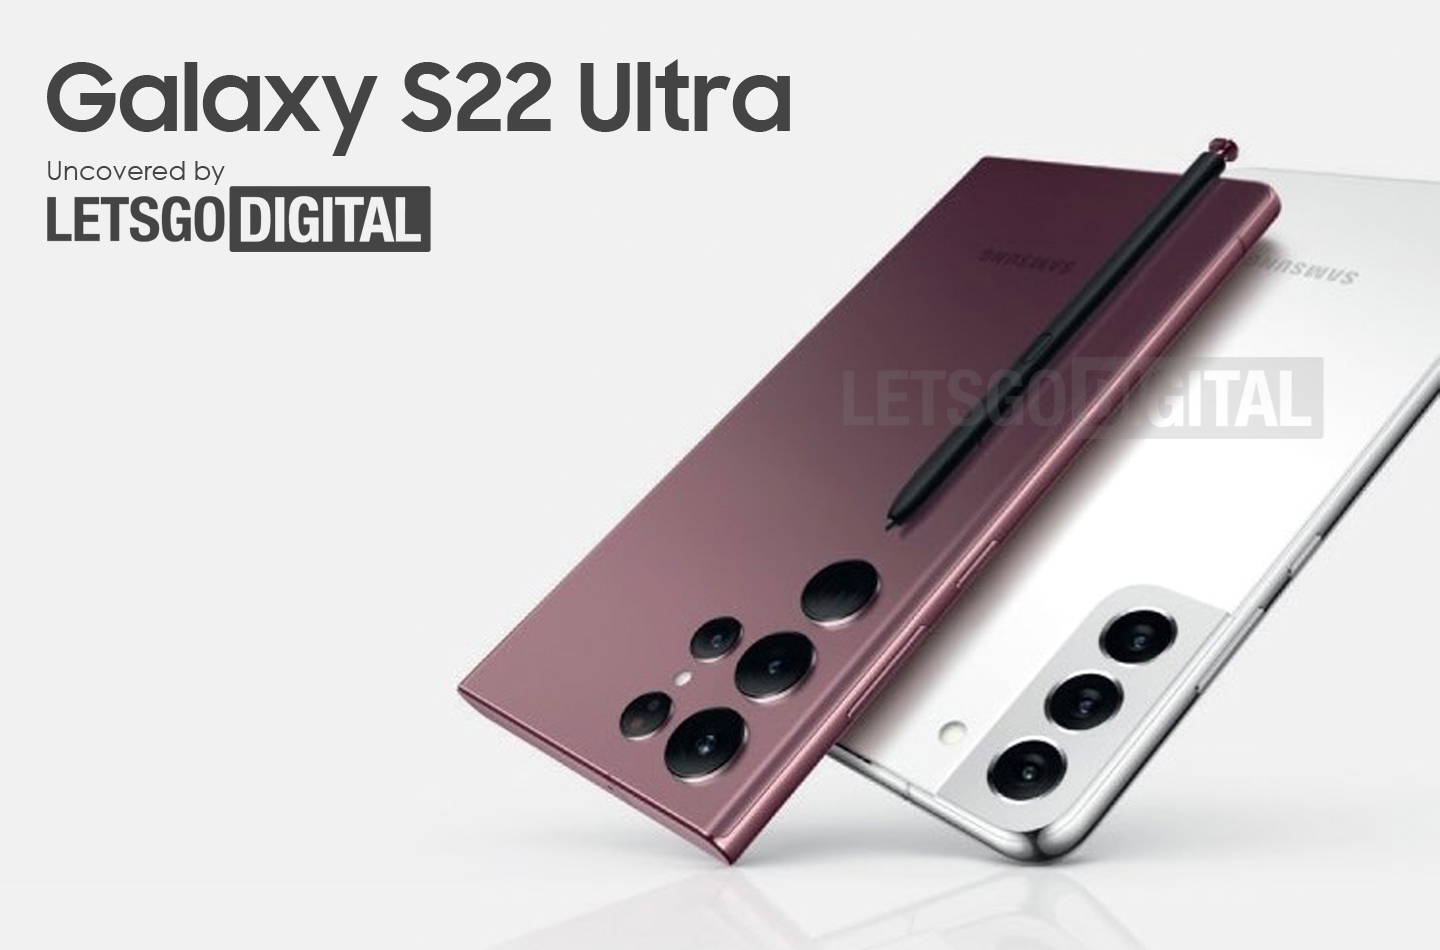 Le design des nouveaux flagships Samsung s'est confirmé : Galaxy S22 Ultra et Galaxy S22+ "éclairés" sur l'affiche officielle